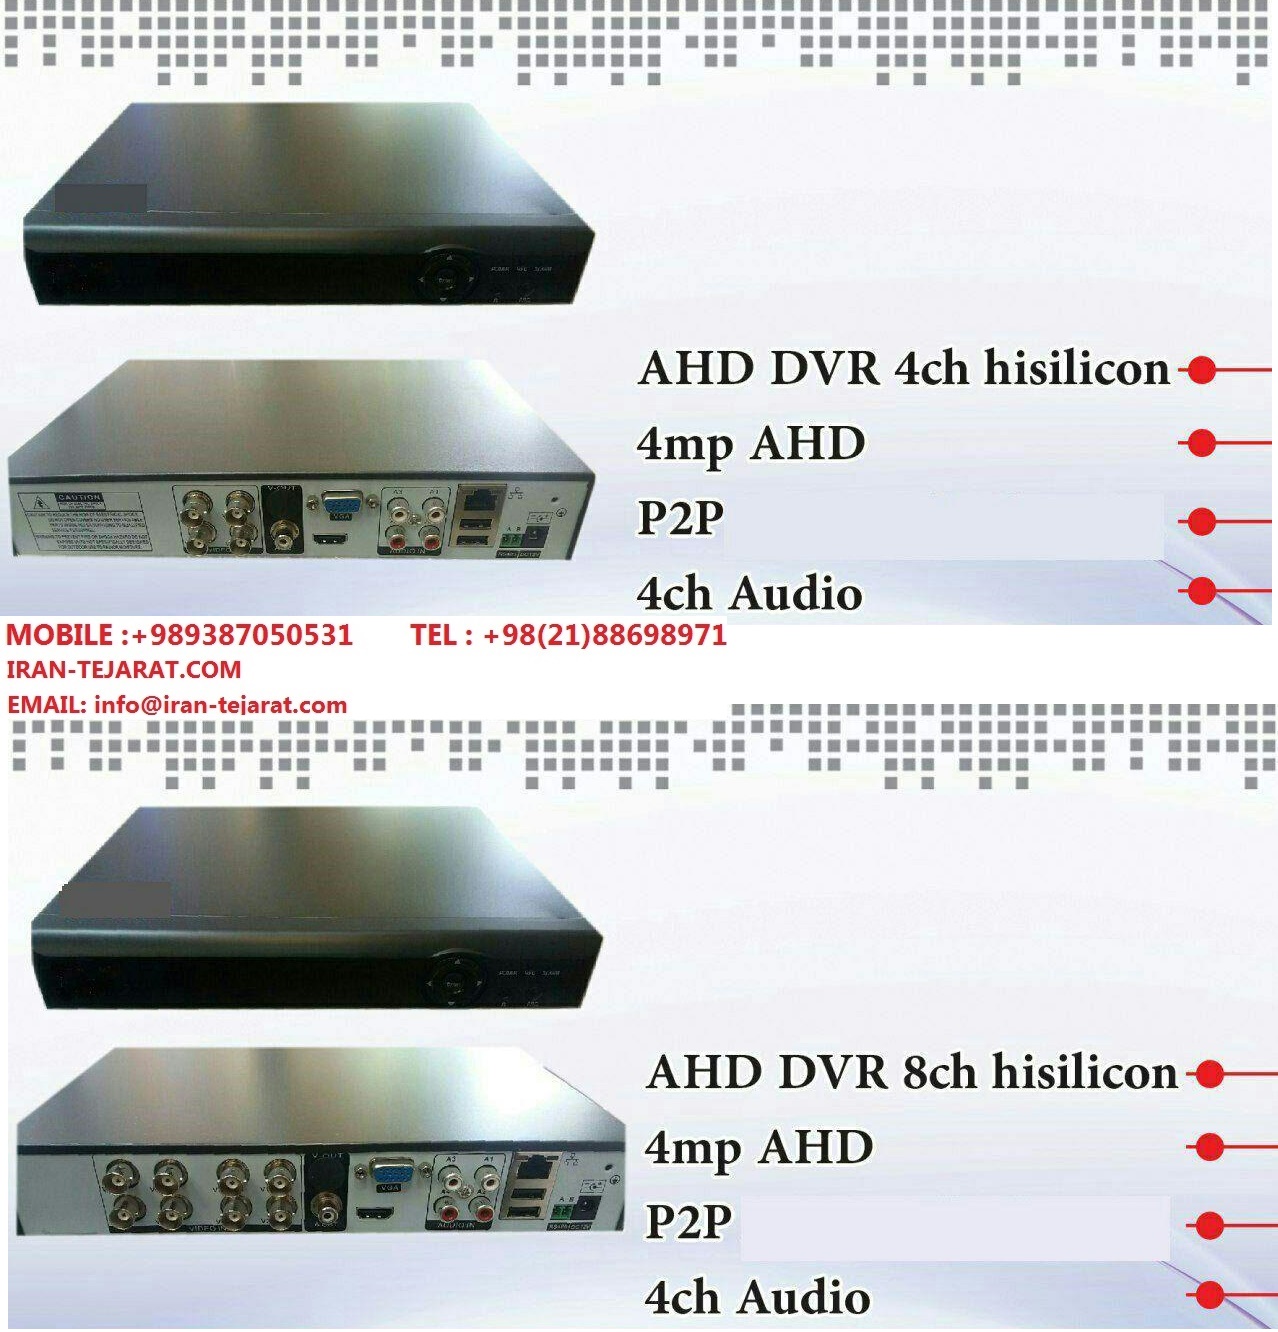 دستگاه DVR AHD